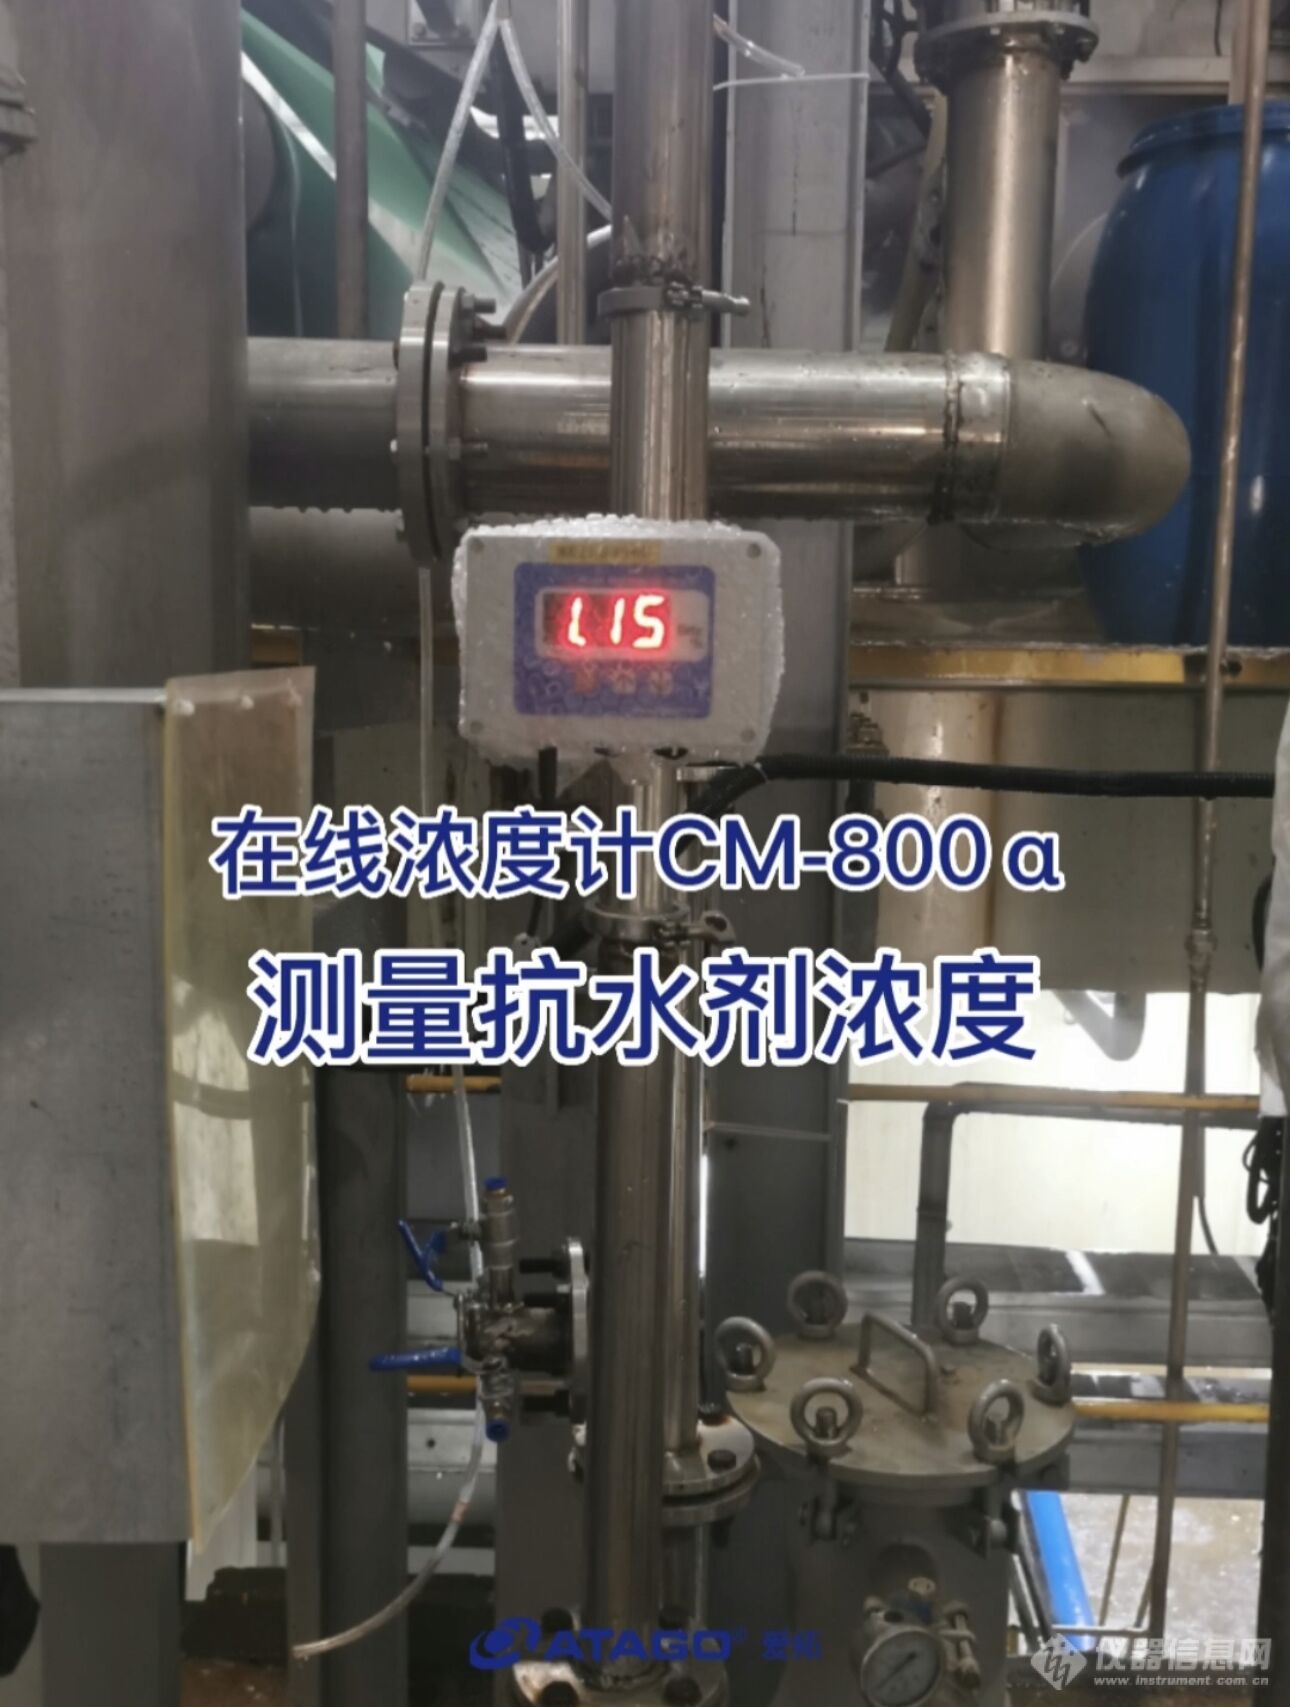 爱拓在线折光仪CM-800α测量抗水剂浓度.jpg